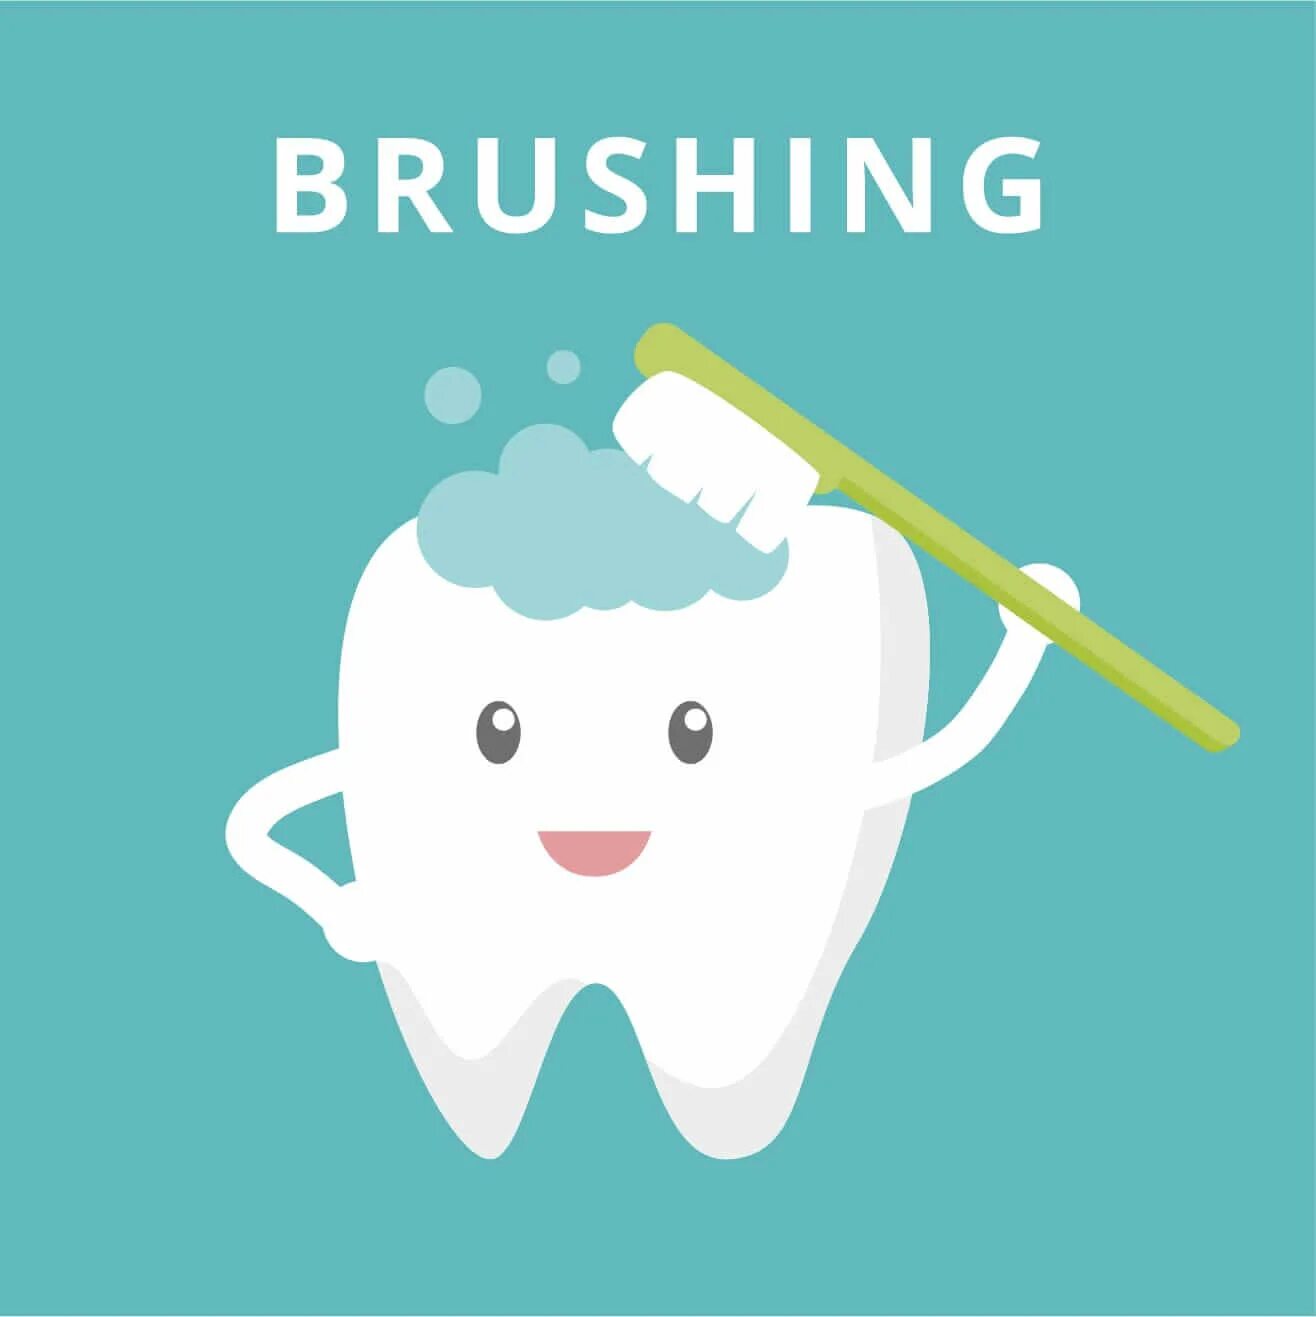 Правильно чистить зубы до завтрака или после завтрака. Когда лучше чистить зубы до или после завтрака. Зубы надо чистить до завтрака или после завтрака. Утром нужно чистить зубы до еды или после. Правильно чистить зубы до завтрака или